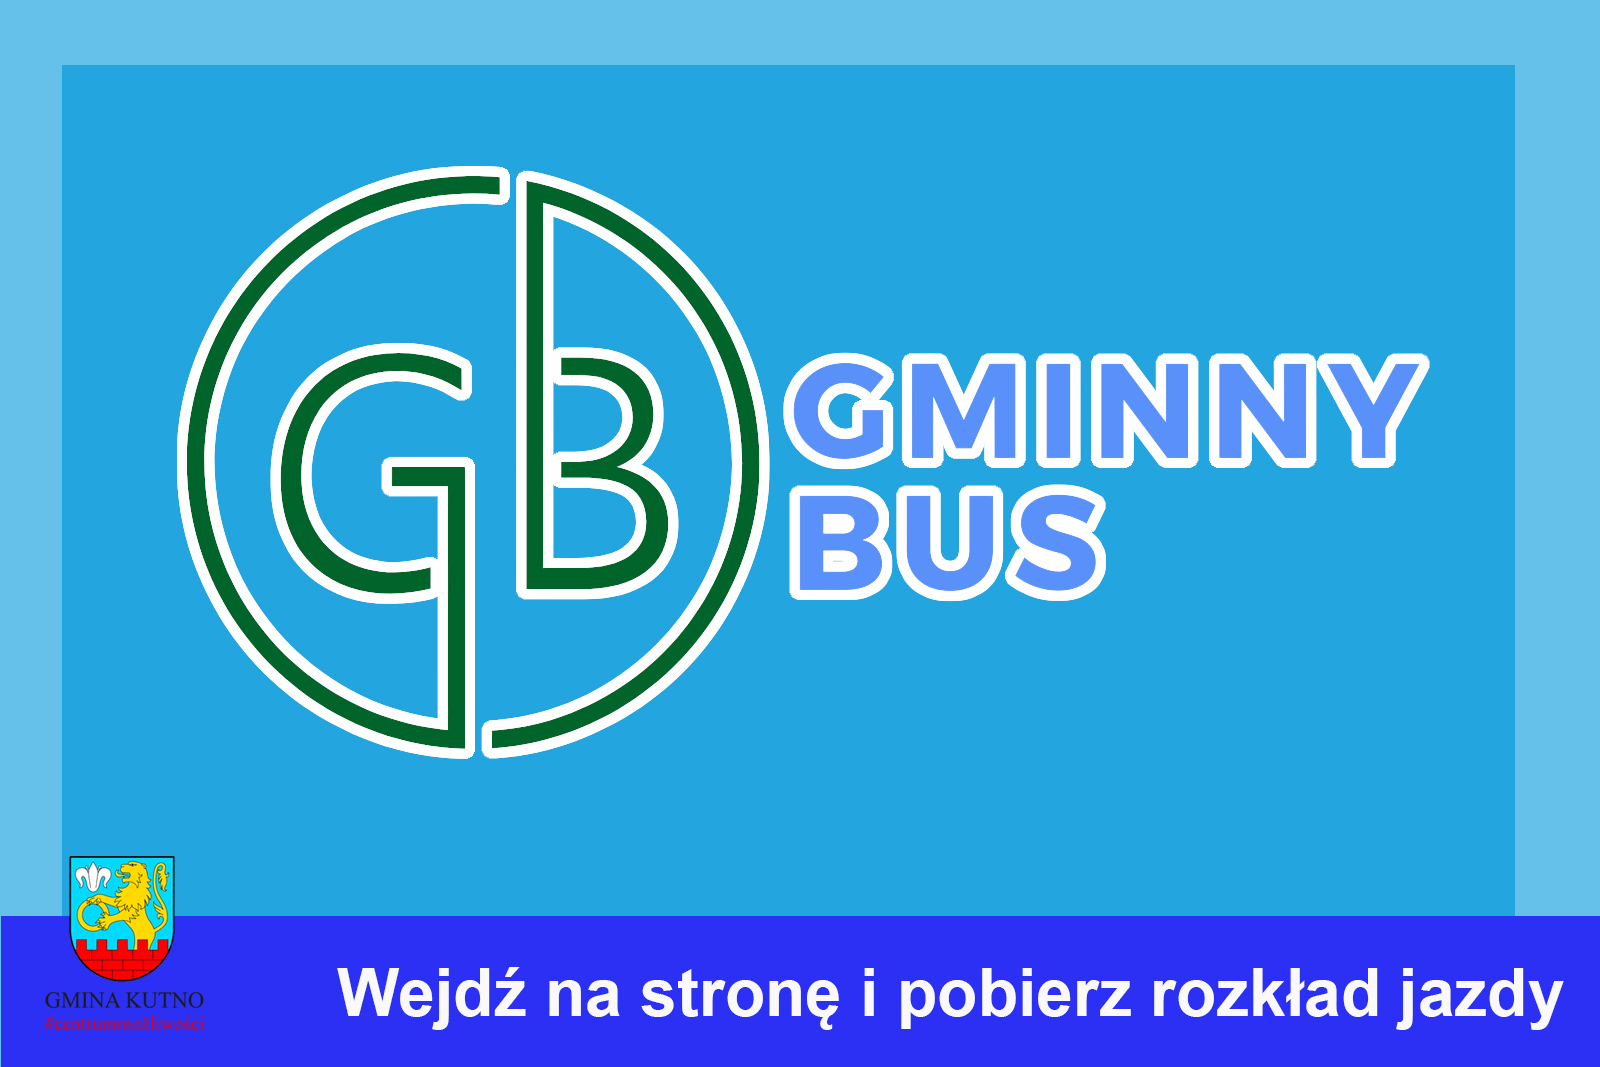 gminny bus